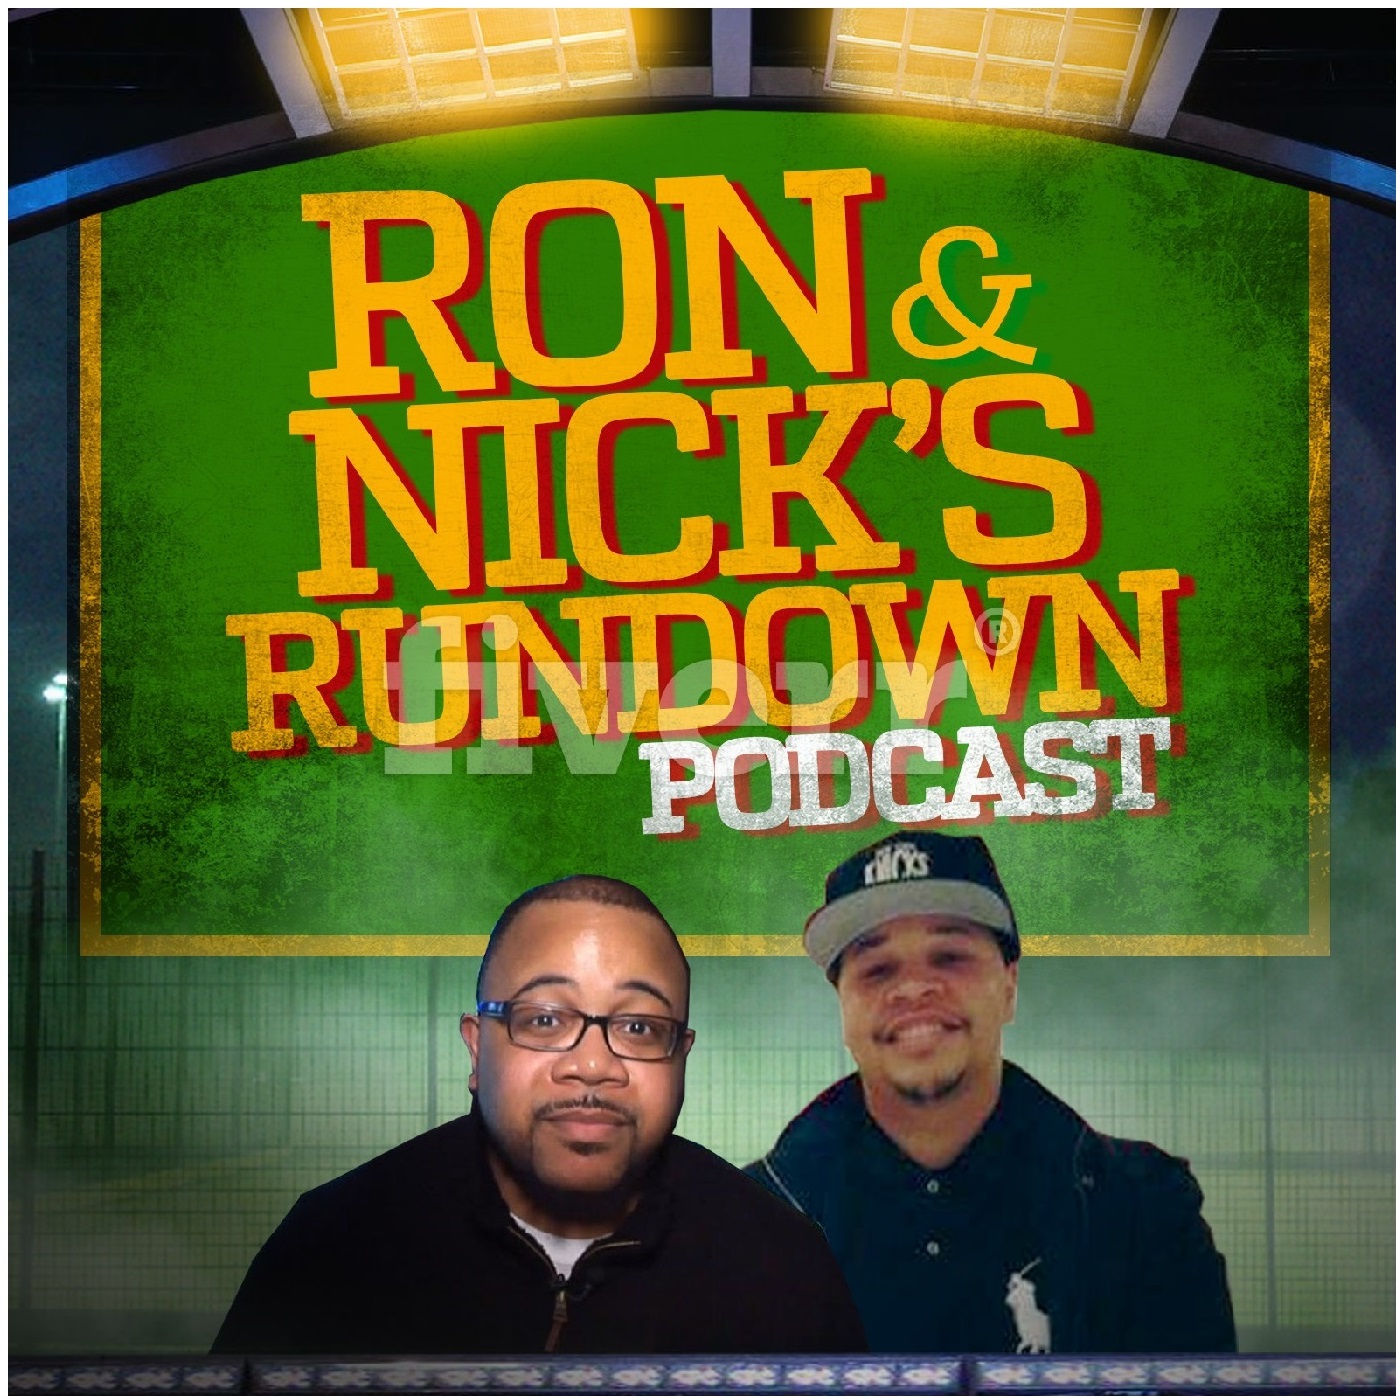 RON & NICK’S RUNDOWN PODCAST Episode 5 (Part 2)